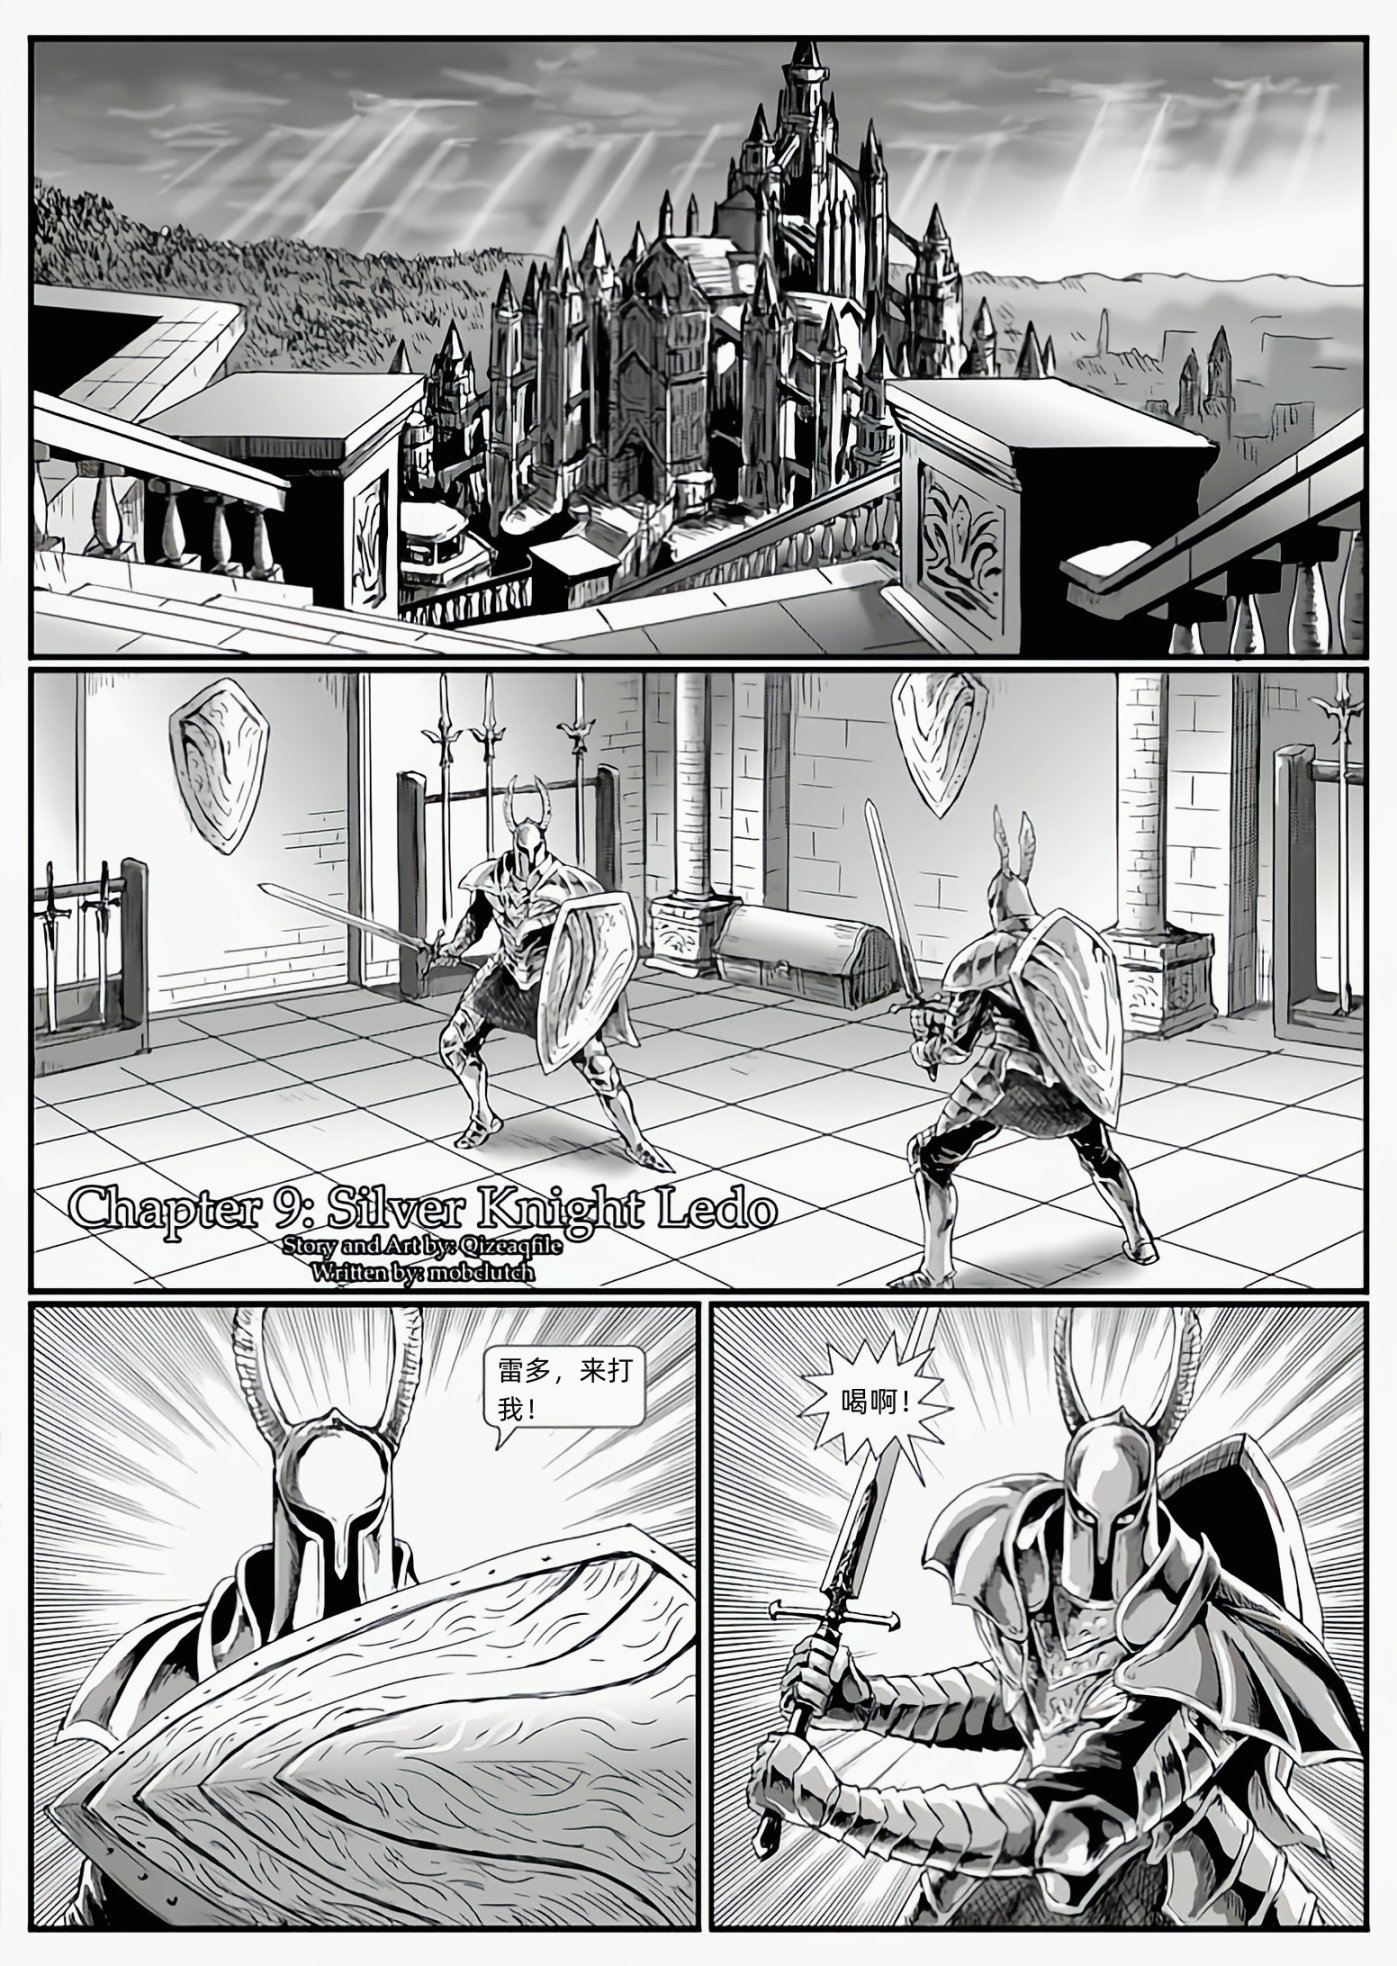 【漫画】黑暗之魂：猎龙战争（chap9银骑士雷多-chap10坚石与大锤-第0张